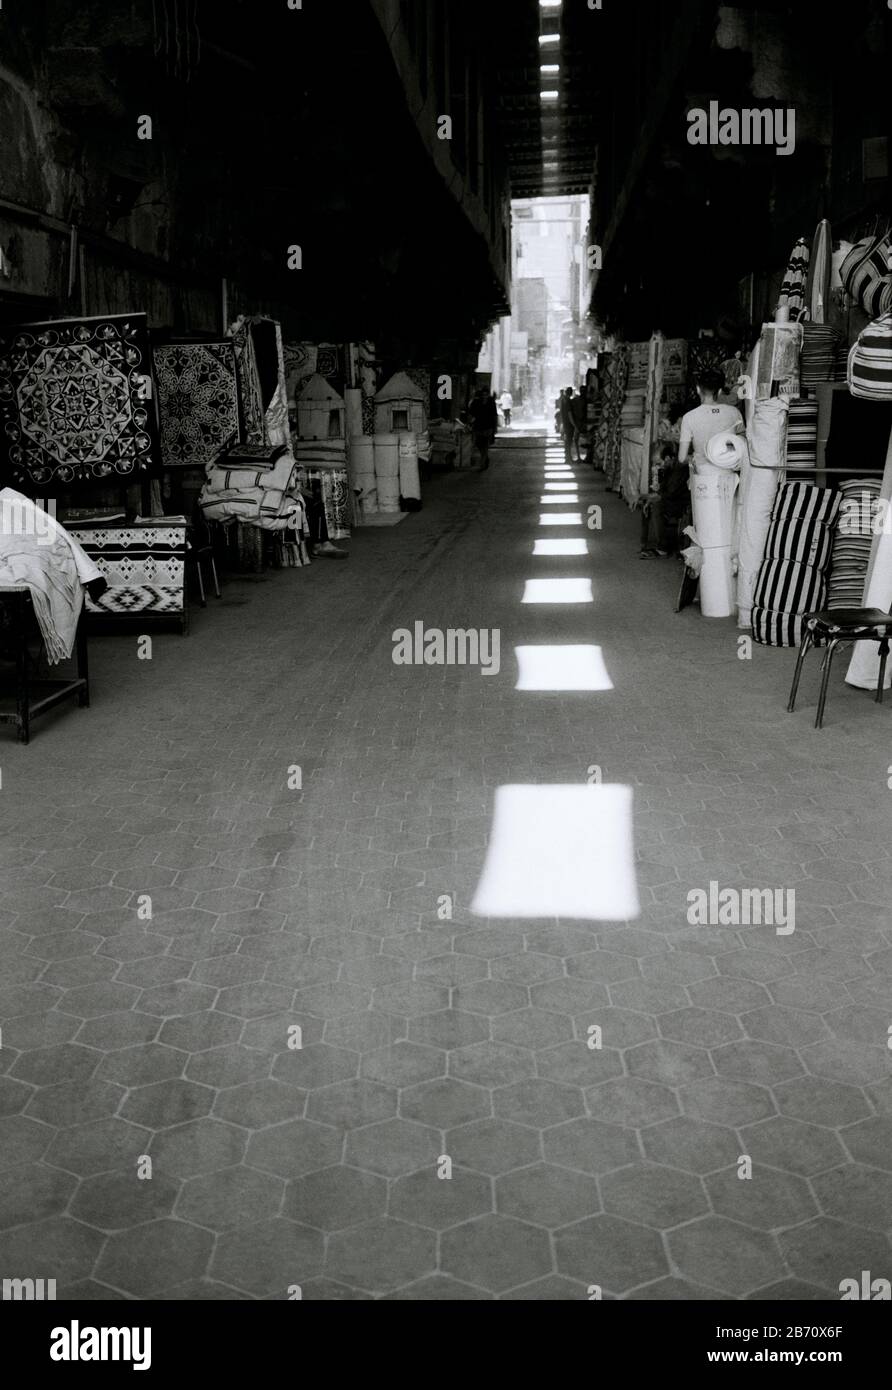 Via dei tentmakers al Khayamiya nella storica Qasaba di Radwan Bey un mercato bazar souk nel Cairo islamico in Egitto in Nord Africa Medio Oriente Foto Stock